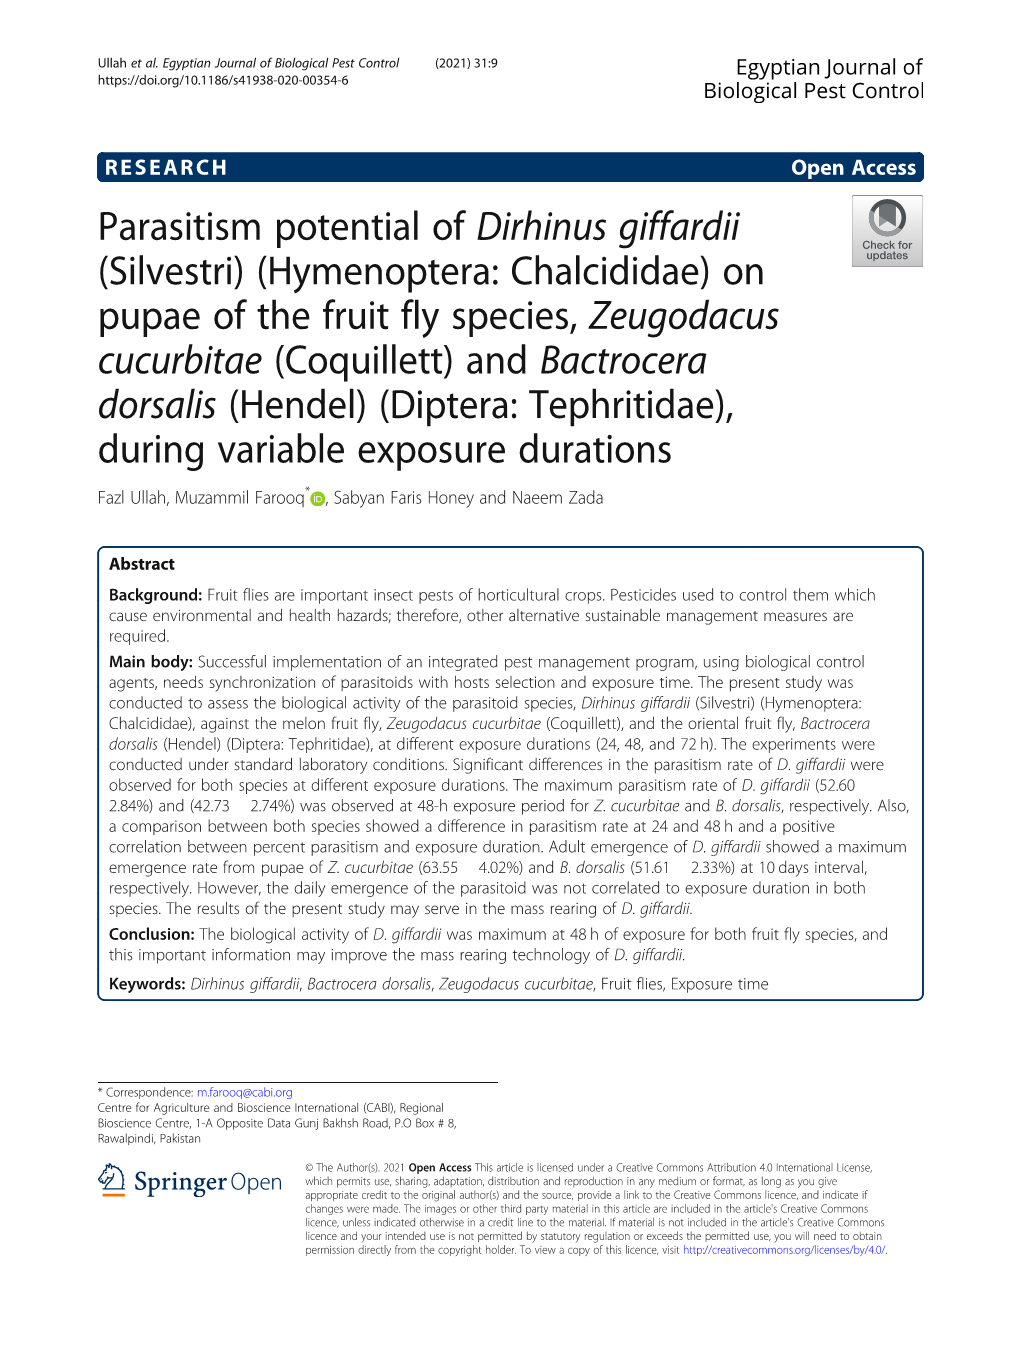 Parasitism Potential of Dirhinus Giffardii (Silvestri) (Hymenoptera